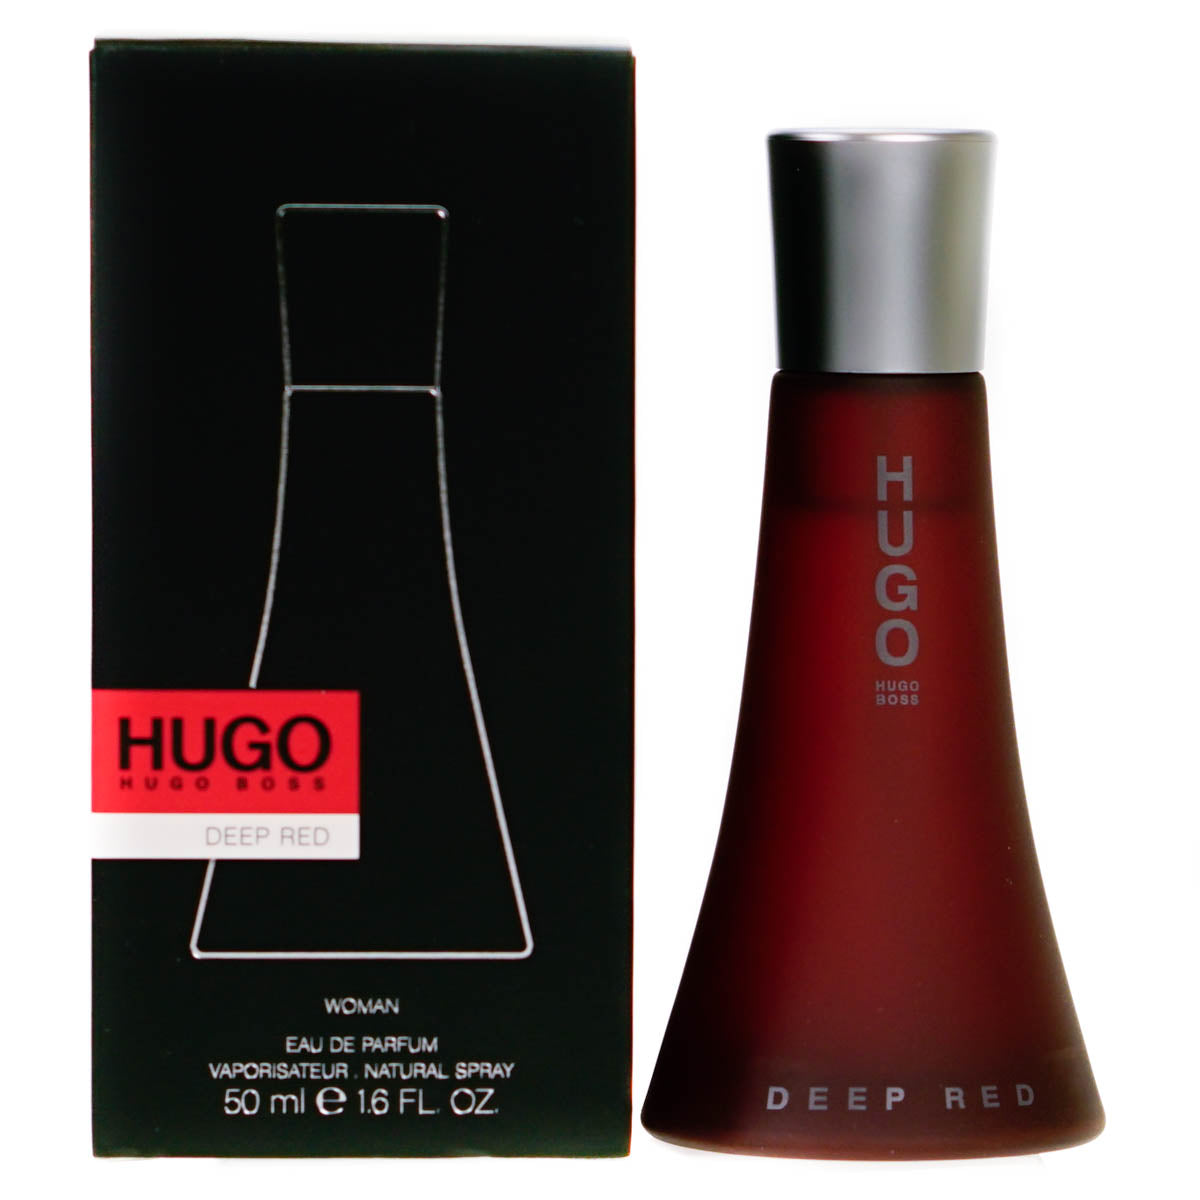 Hugo Boss Woman Deep Red 50ml Eau De Parfum Spray